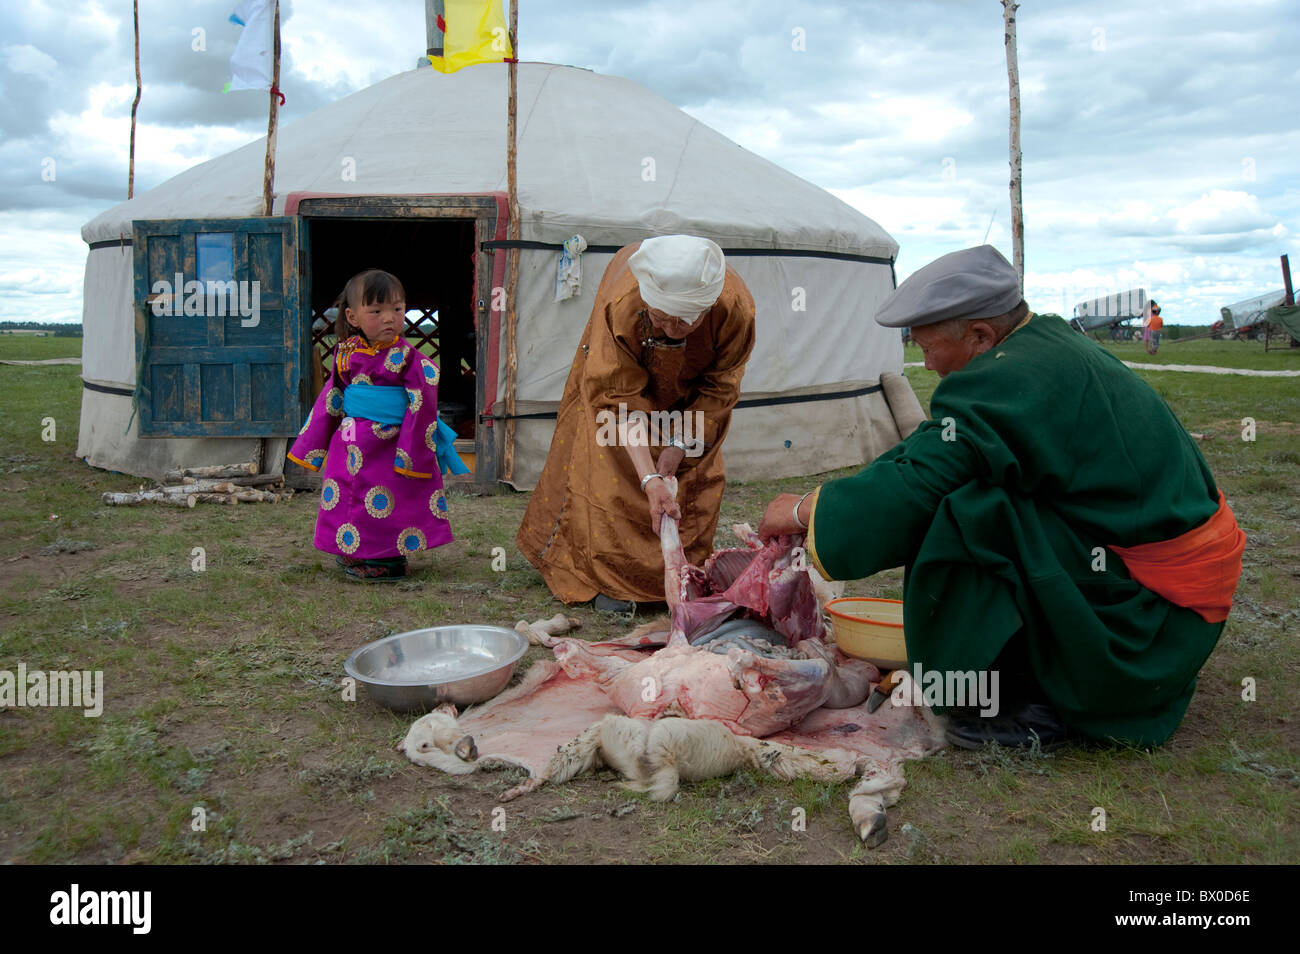 Barag abattage mongole mouton, ancienne bannière Barag, Hulunbuir, région autonome de Mongolie intérieure, Chine Banque D'Images